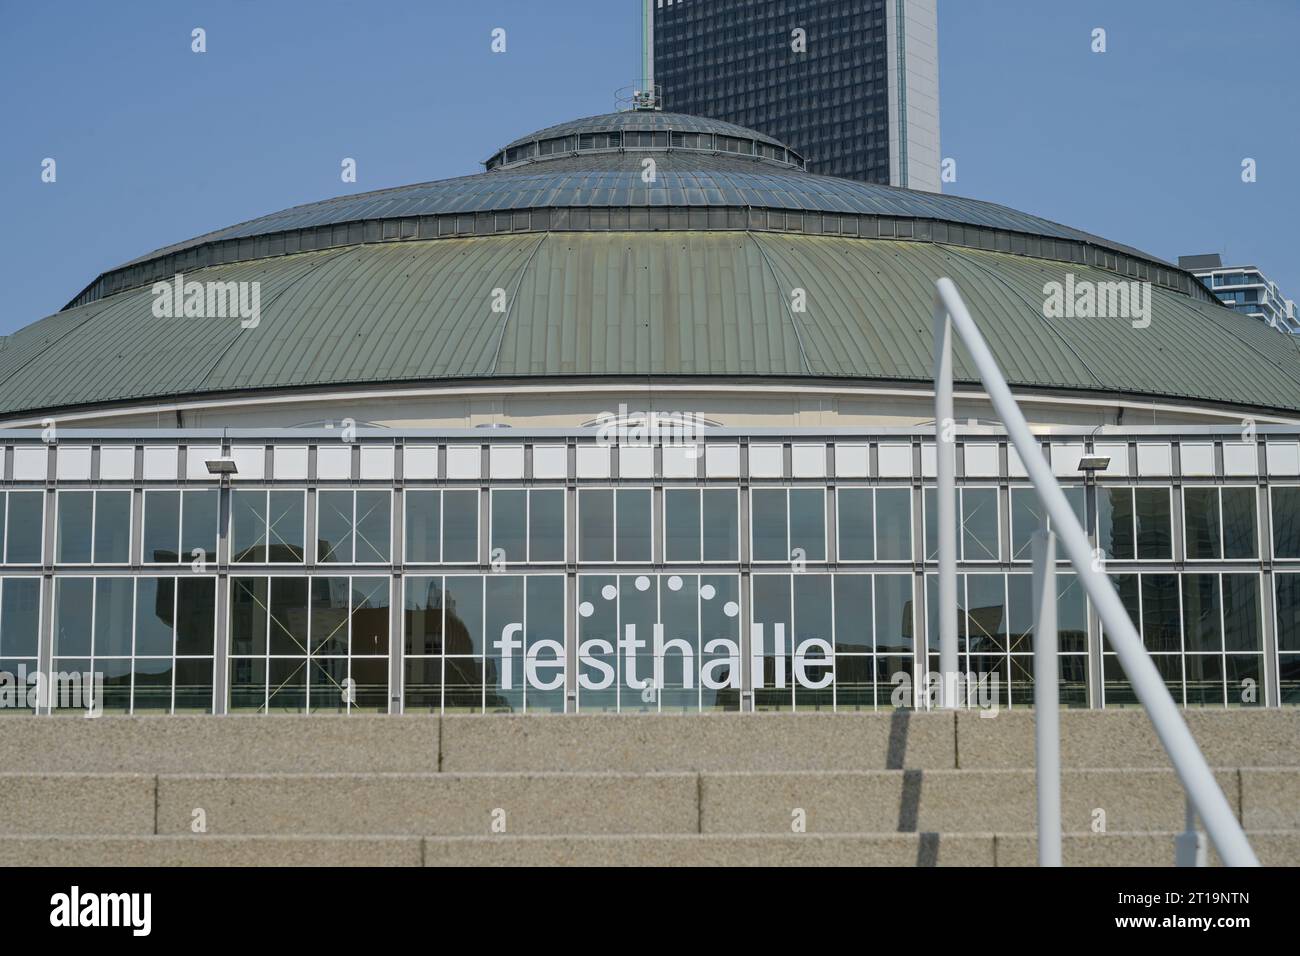 Festhalle Messe Frankfurt, Ludwig-Erhard-Anlage, Frankfurt am Main, Hessen, Deutschland Stock Photo